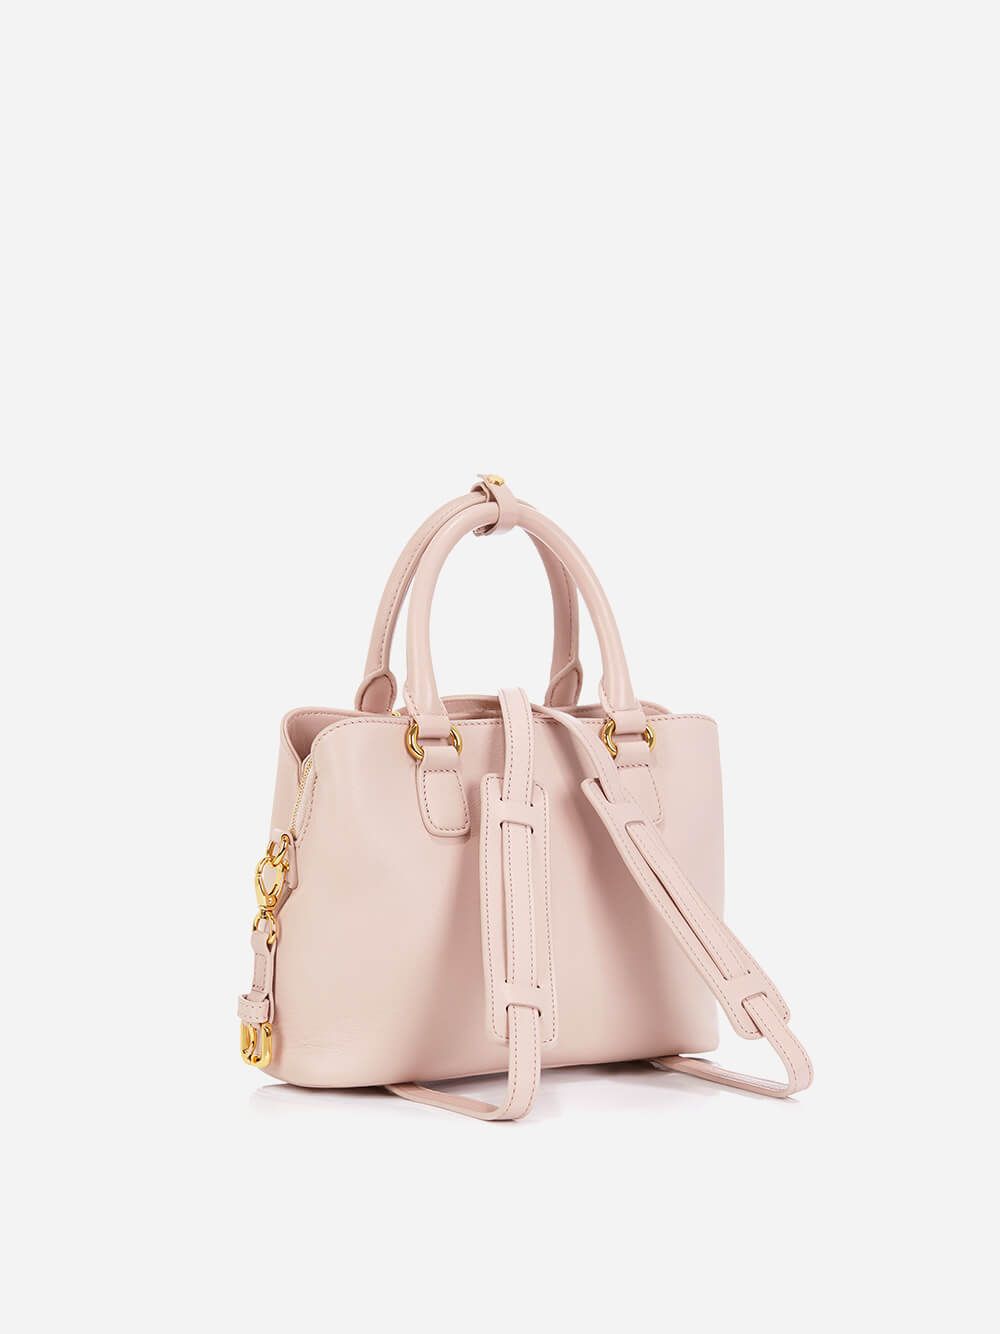 XM Pinkl Bag | Any Di